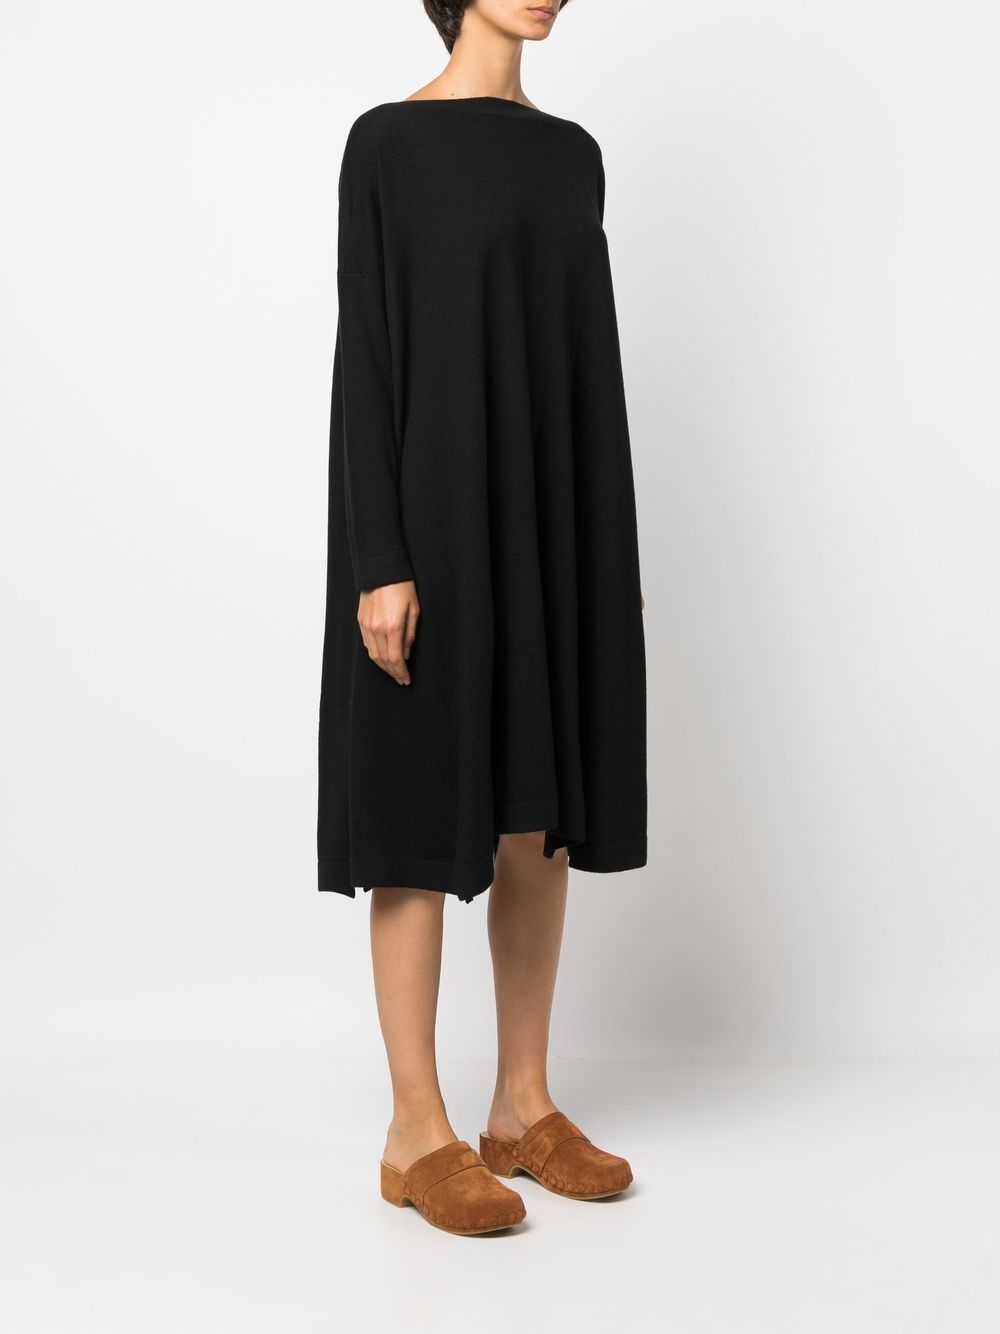 A-line Wool Dress - Oversized Knit Dress for Women